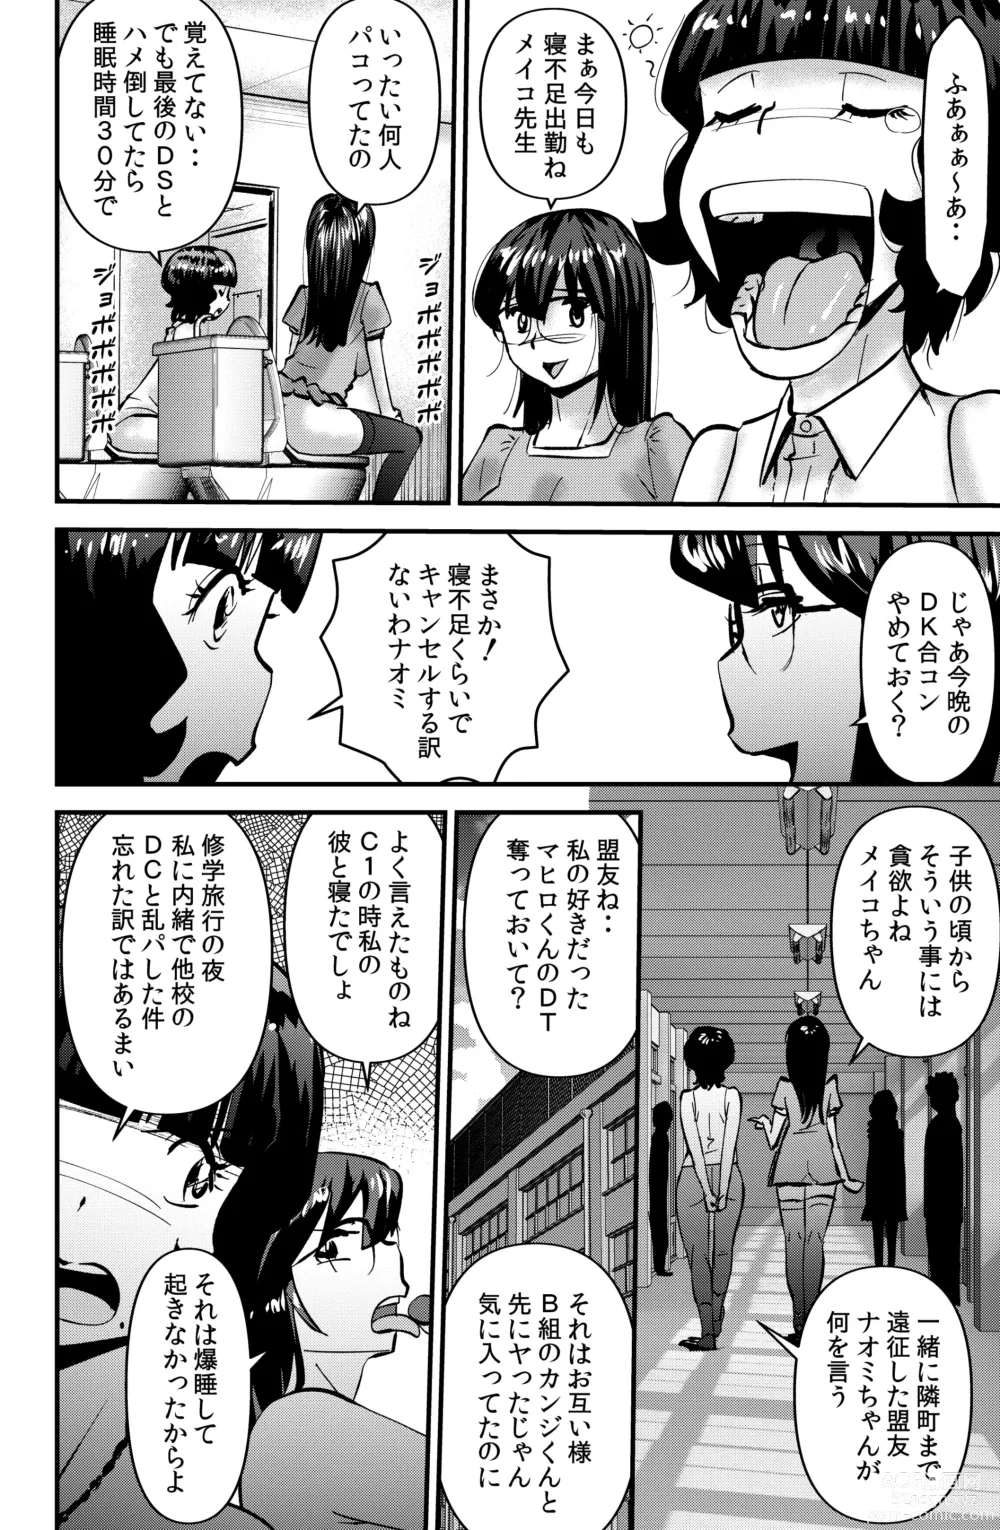 Page 10 of doujinshi Souda! Sensei de Ikou.